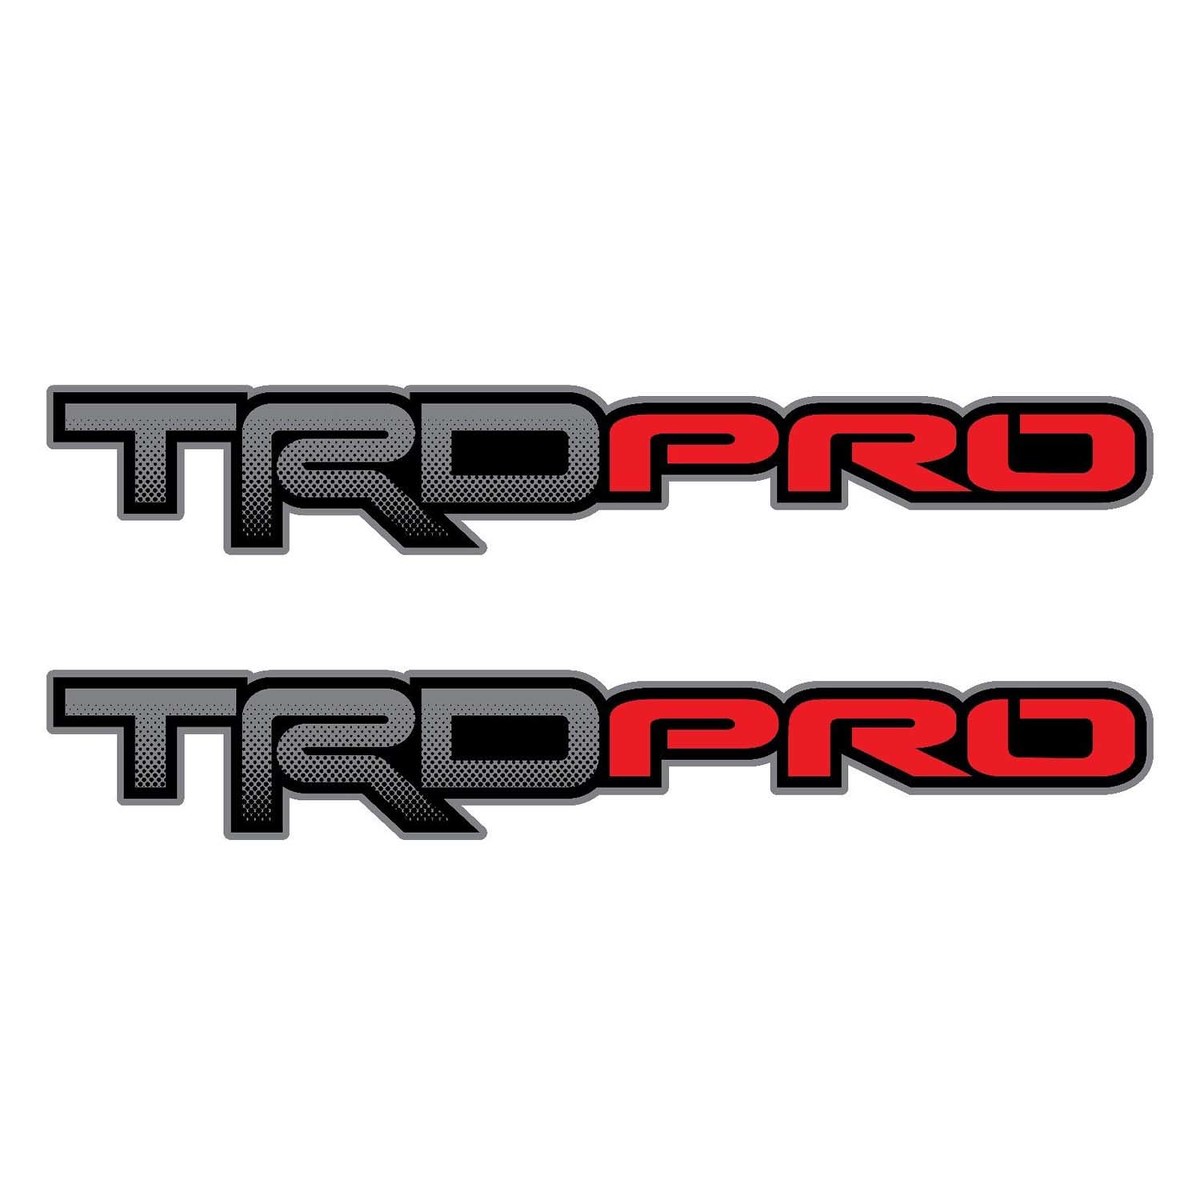 Ensemble de 2: TRD Pro Toyota Tacoma Tundra Tundra Tundra Camion de chevet Color Color Color Decal